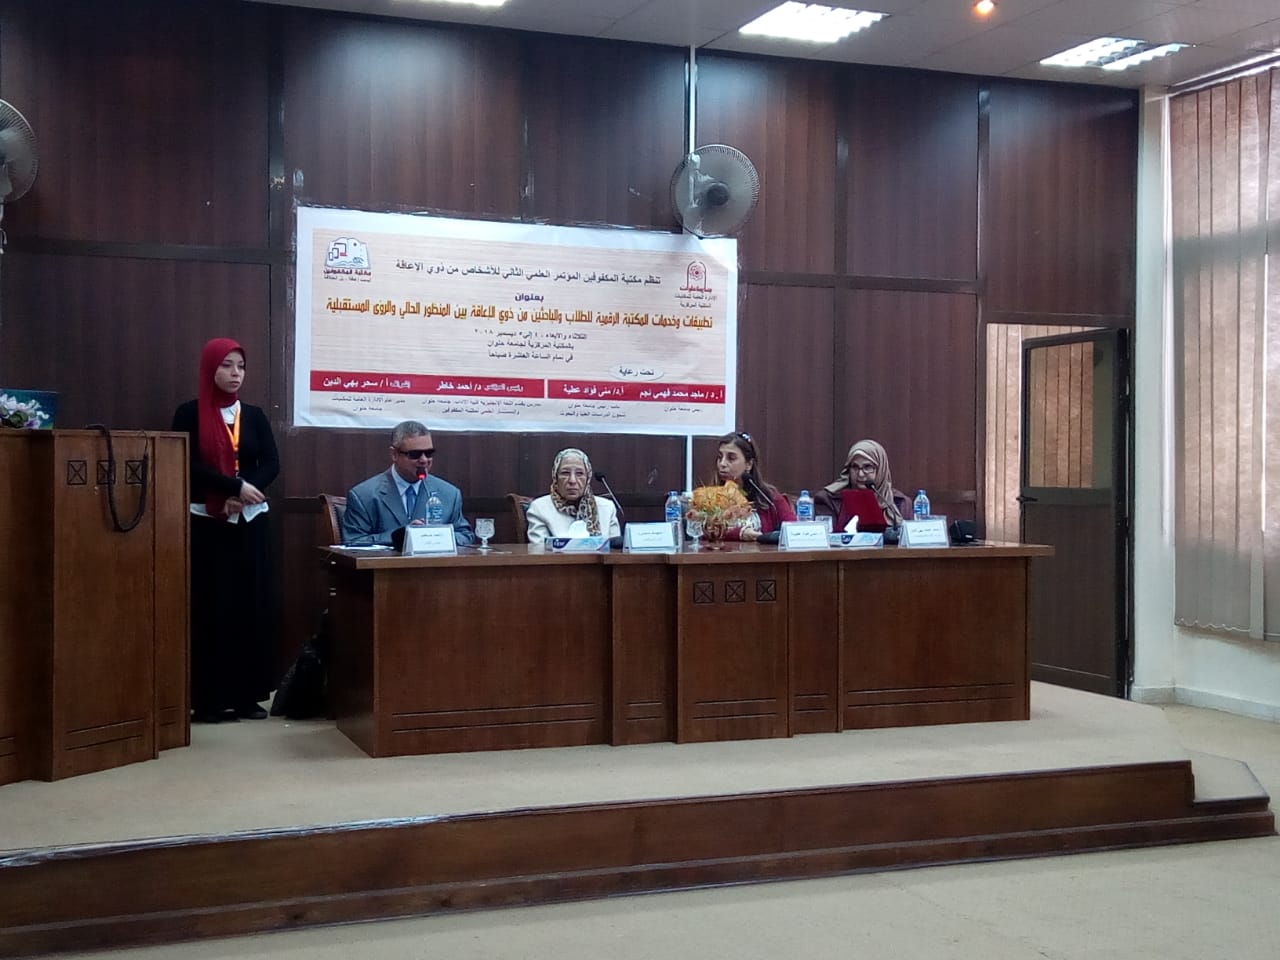 انطلاق اليوم الأول من فاعليات المؤتمر العلمى الثانى لذوى الاحتياجات الخاصة بجامعة حلوان (3)